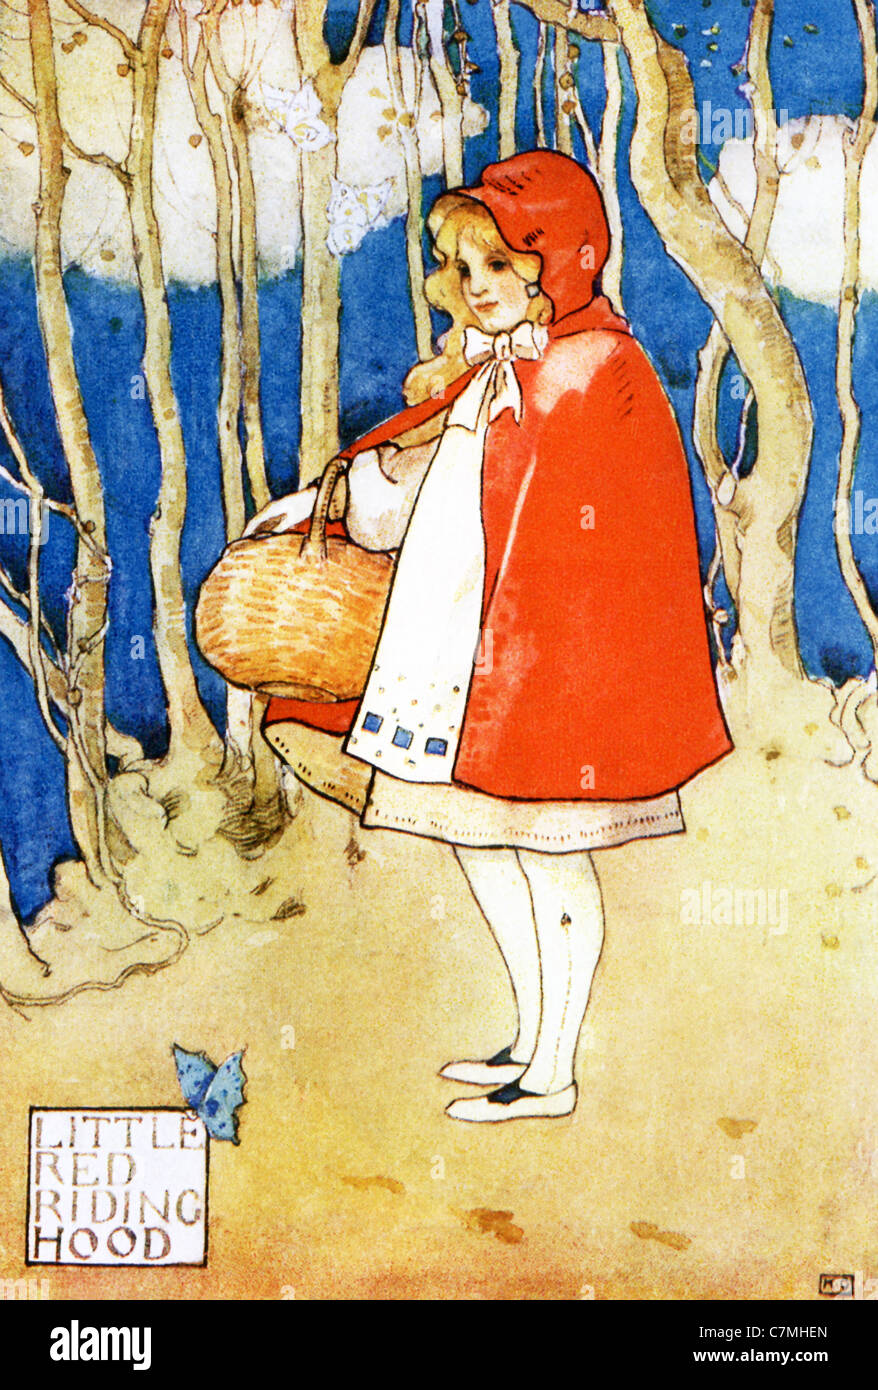 Little Red Riding Hood ist eine alte französische Märchen über ein junges Mädchen, hier abgebildet auf dem Weg zum Haus ihrer Großmutter. Stockfoto